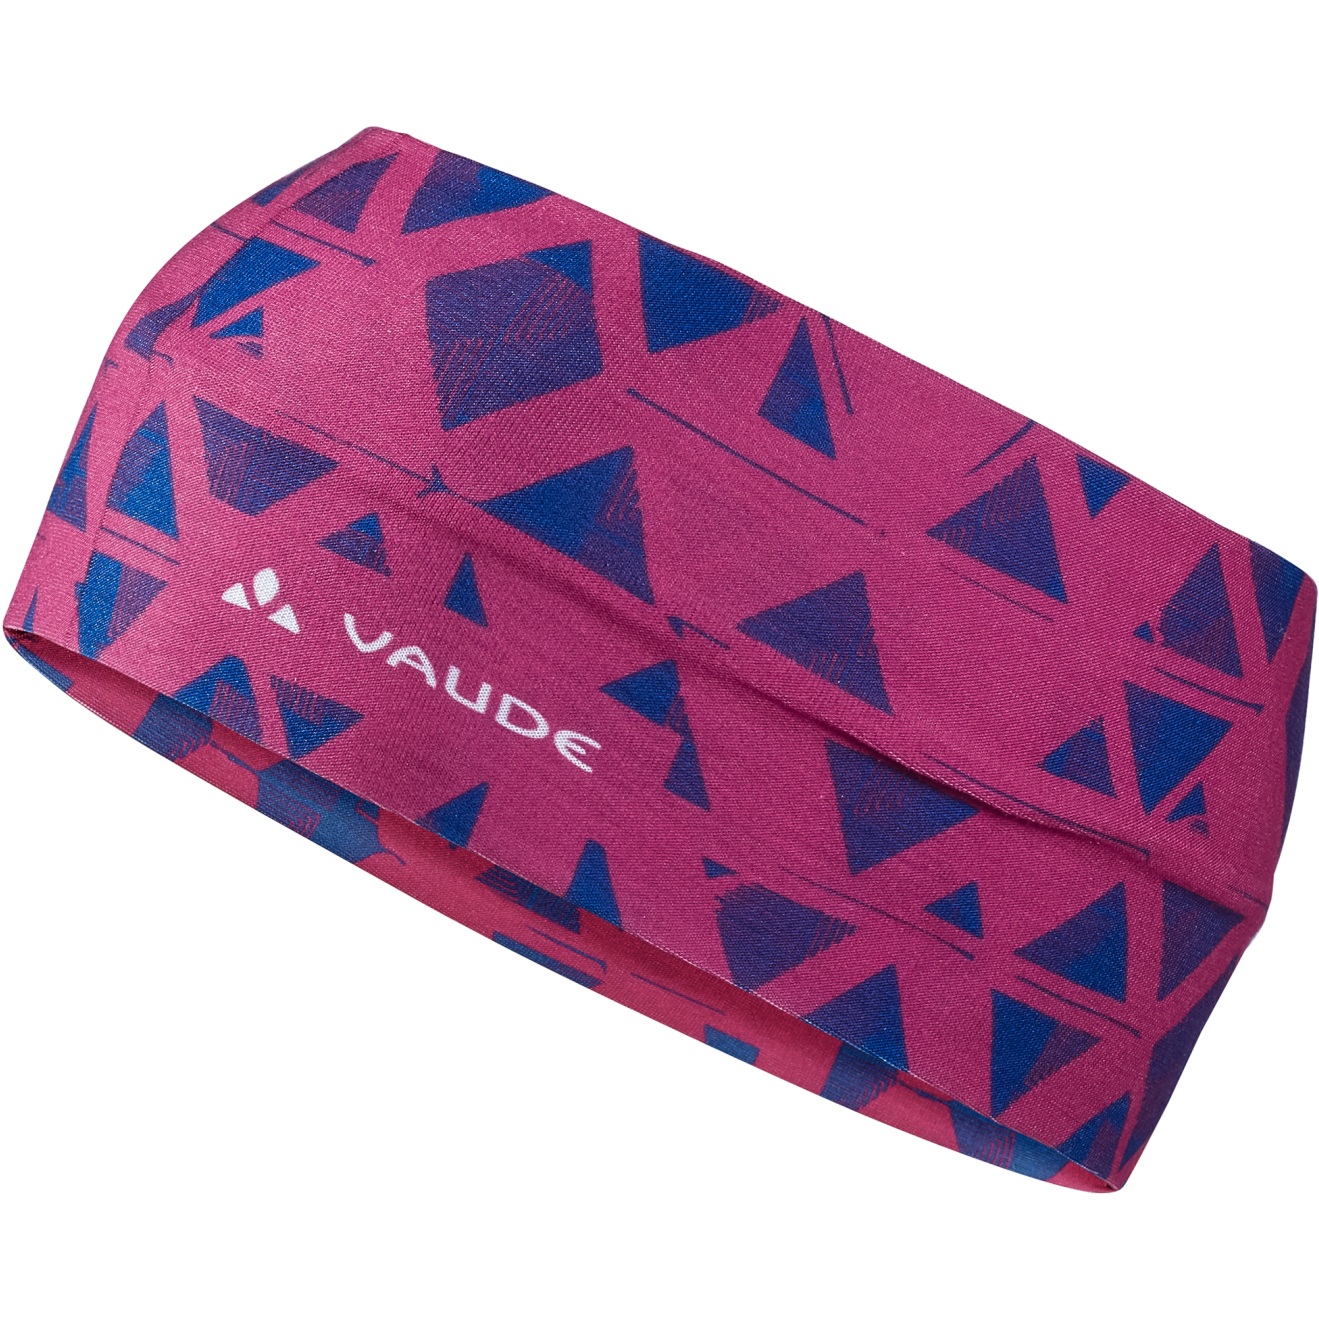 Produktbild von Vaude Cassons Stirnband - rich pink